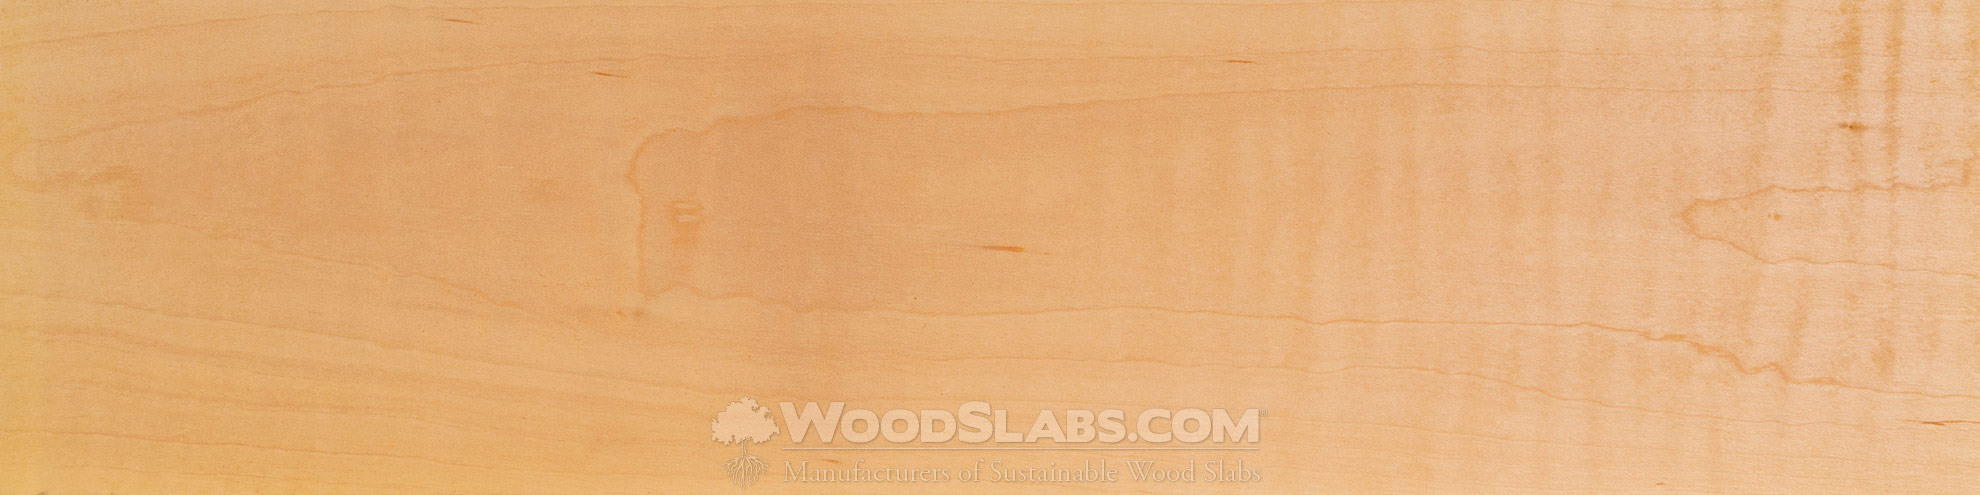 Maple Wood Slabs